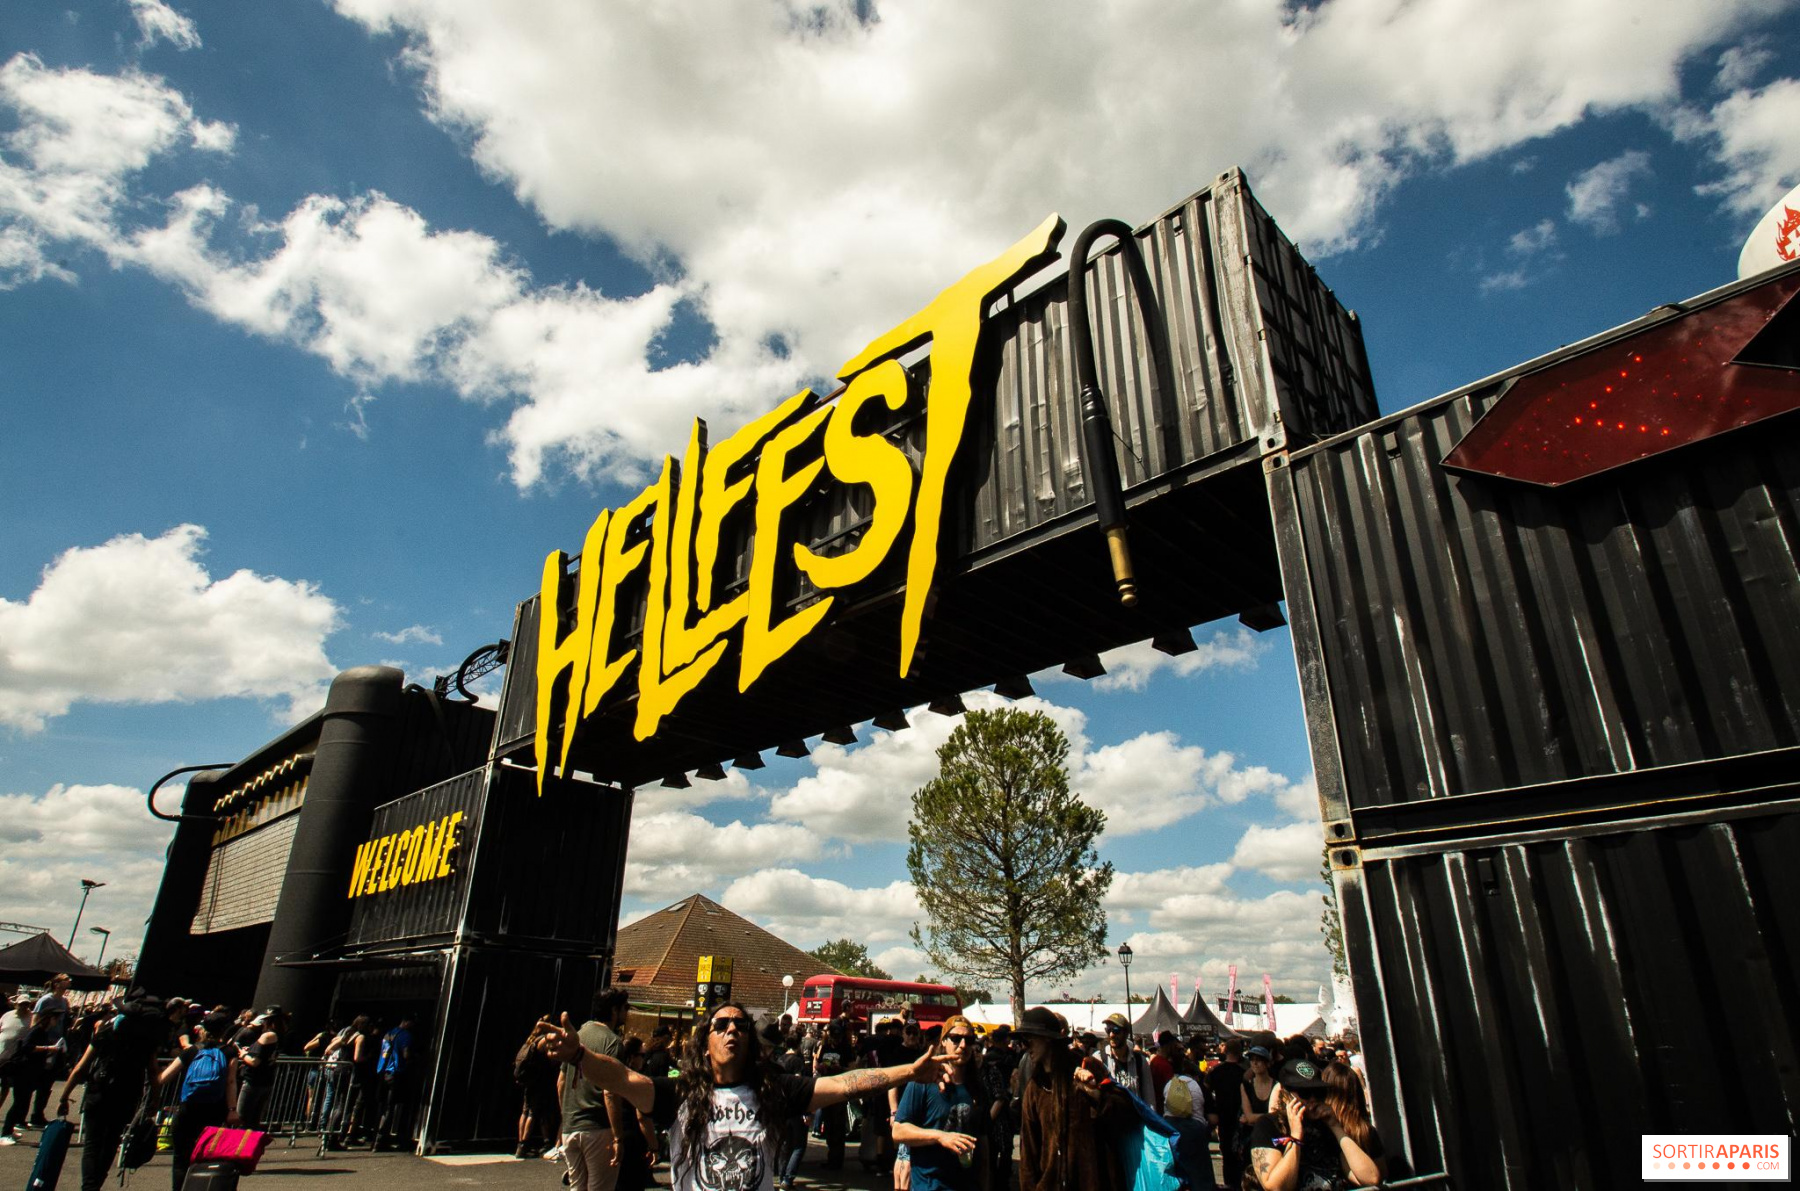 Hellfest comparte comunicado a la Ministra de la Cultura para apoyar realización del festival